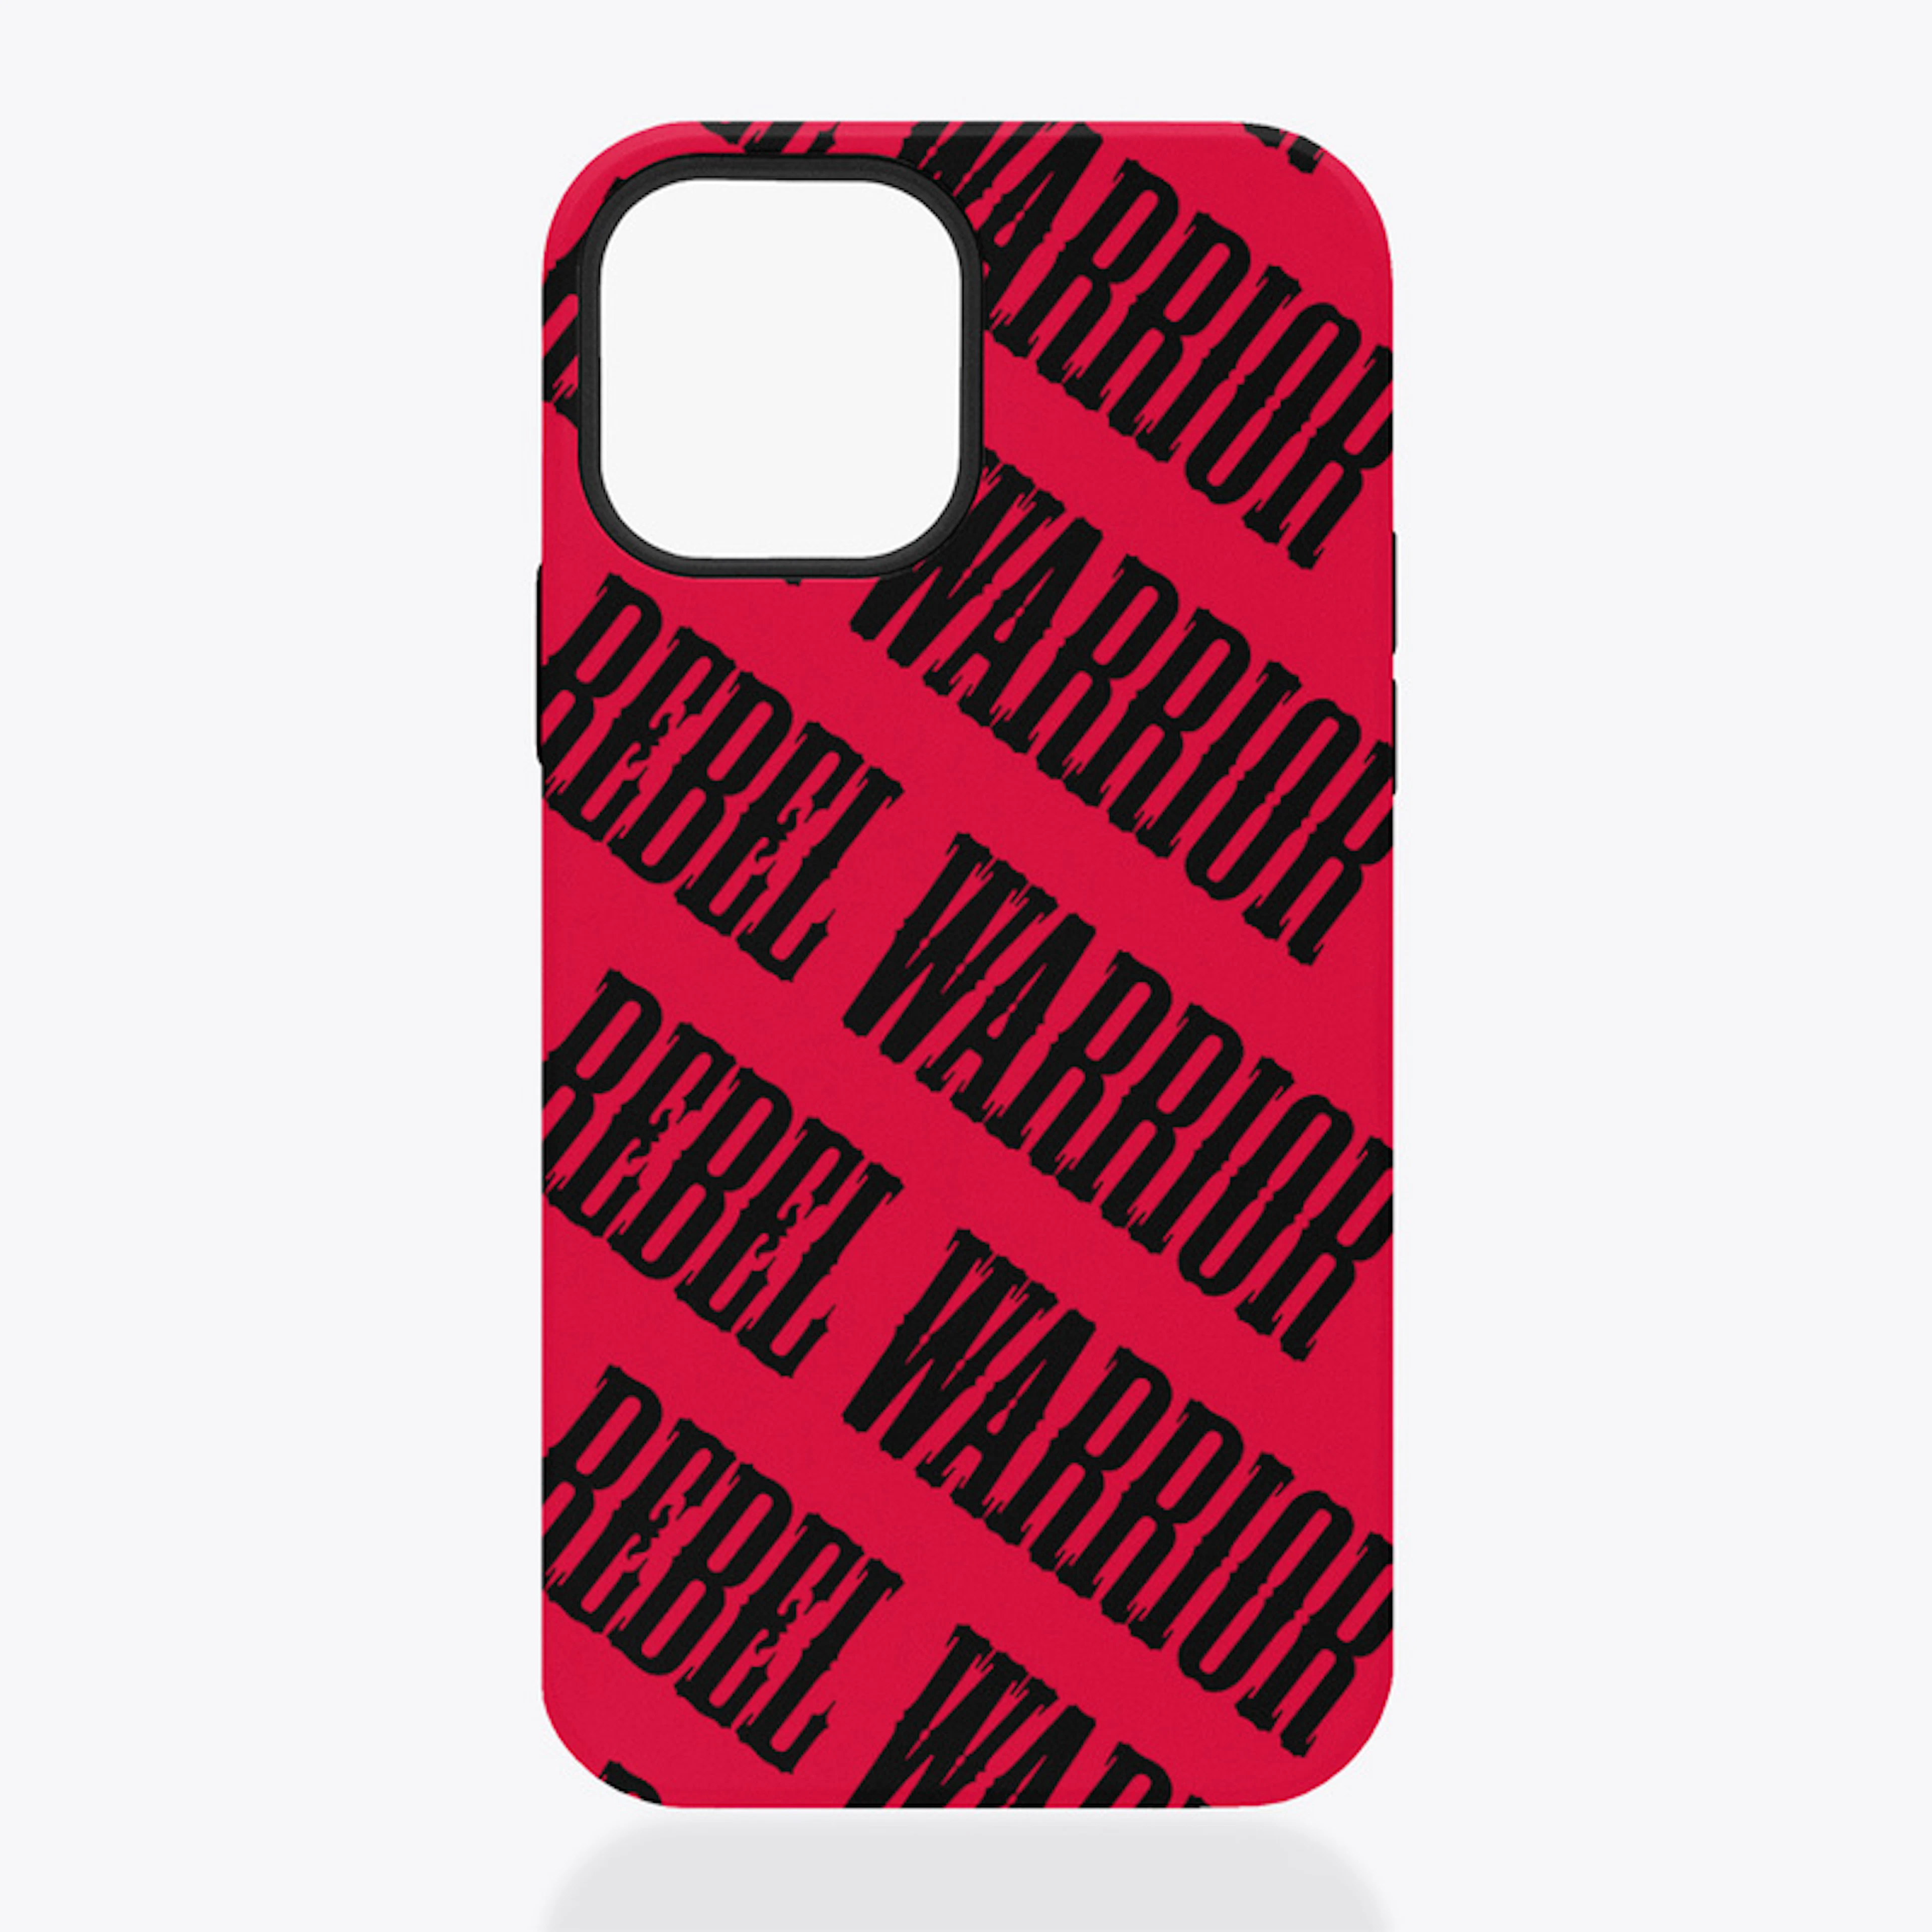 Rebel Warrior iPhone Case